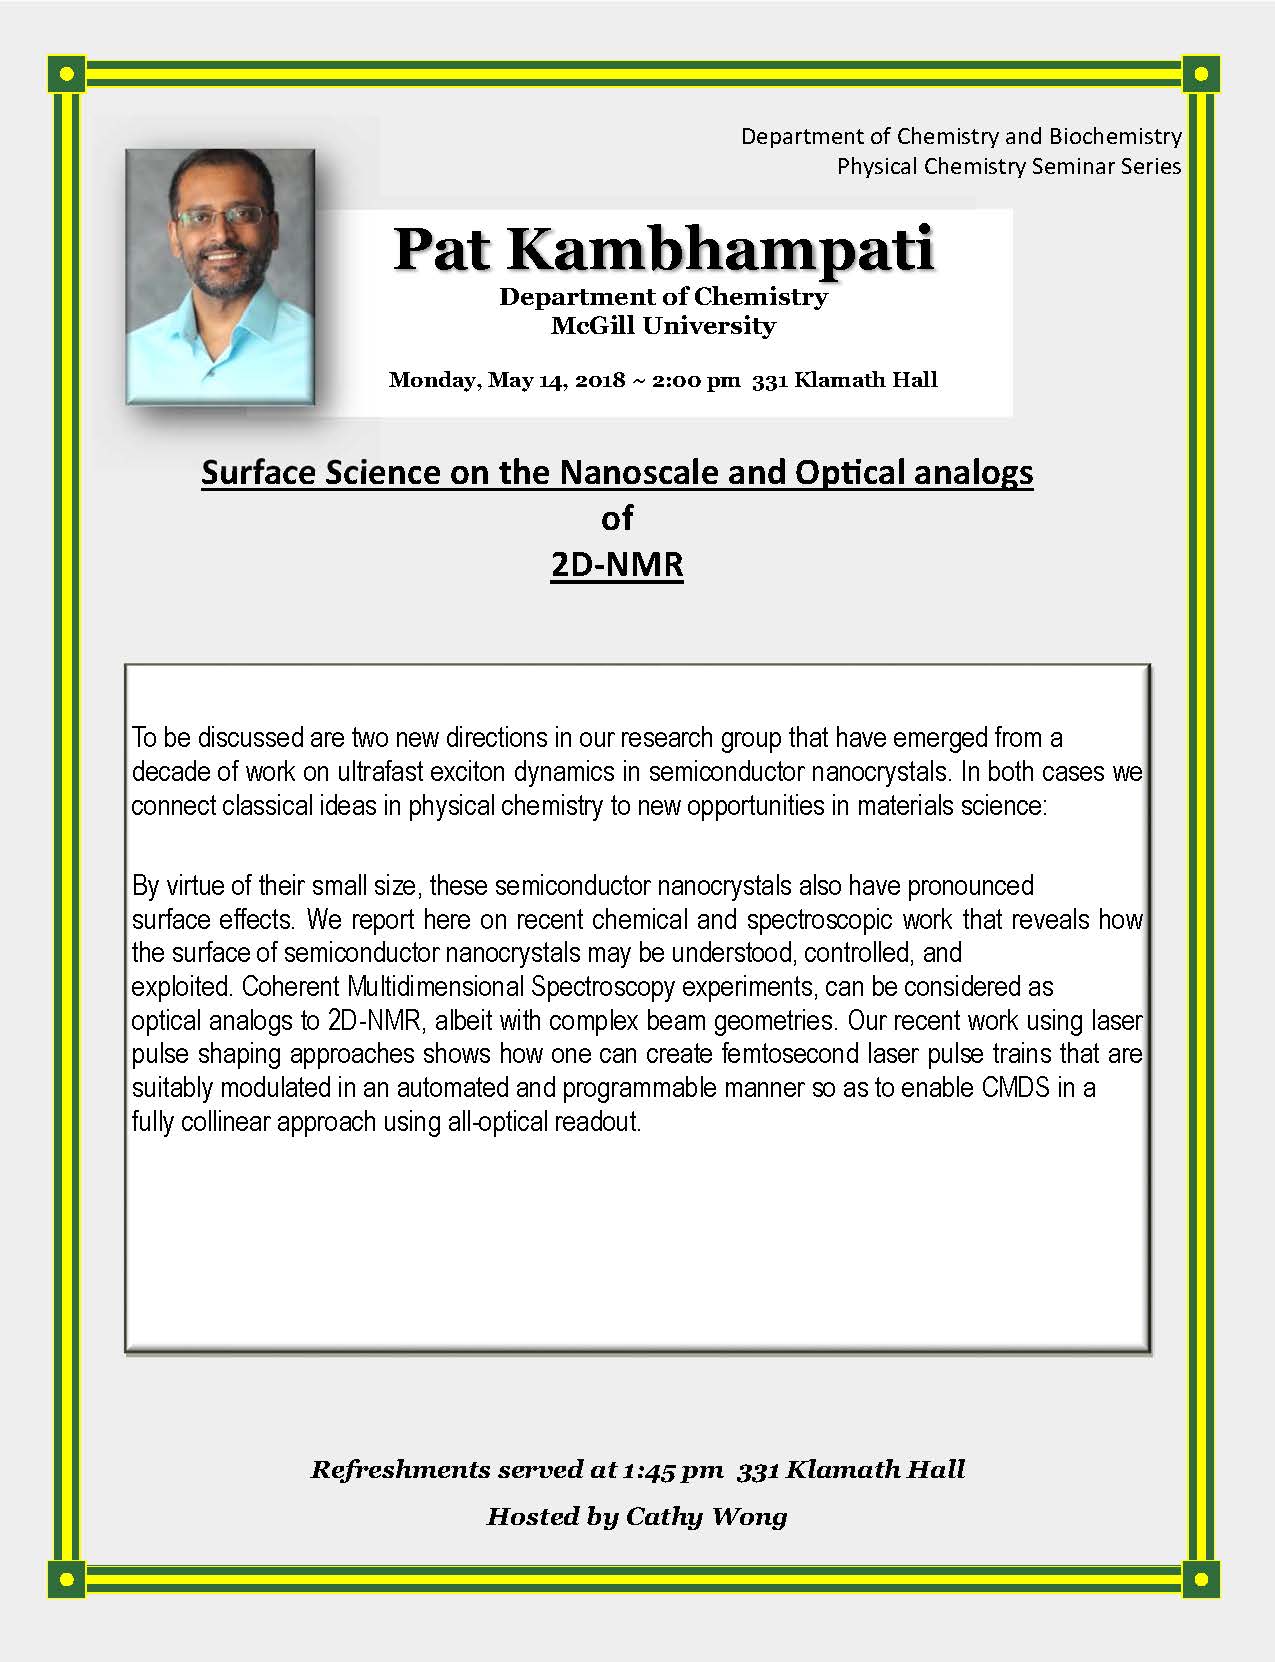 Seminar Poster - Pat Kambhampati